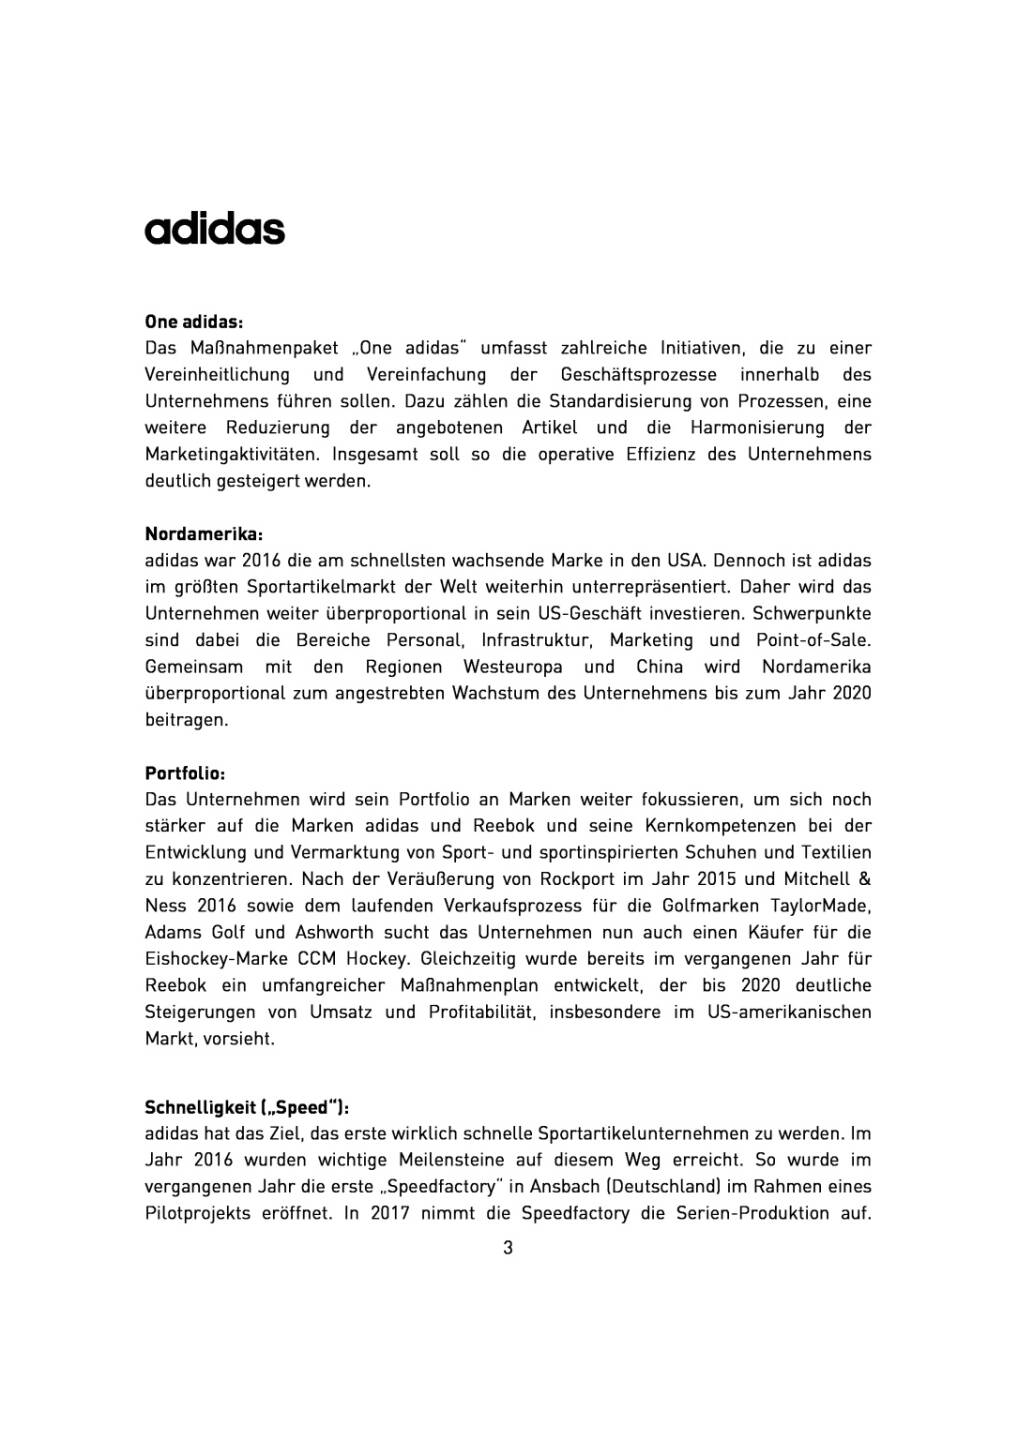 adidas erhöht Umsatz- und Gewinnziele bis 2020, Seite 3/5, komplettes Dokument unter http://boerse-social.com/static/uploads/file_2145_adidas_erhoht_umsatz-_und_gewinnziele_bis_2020.pdf